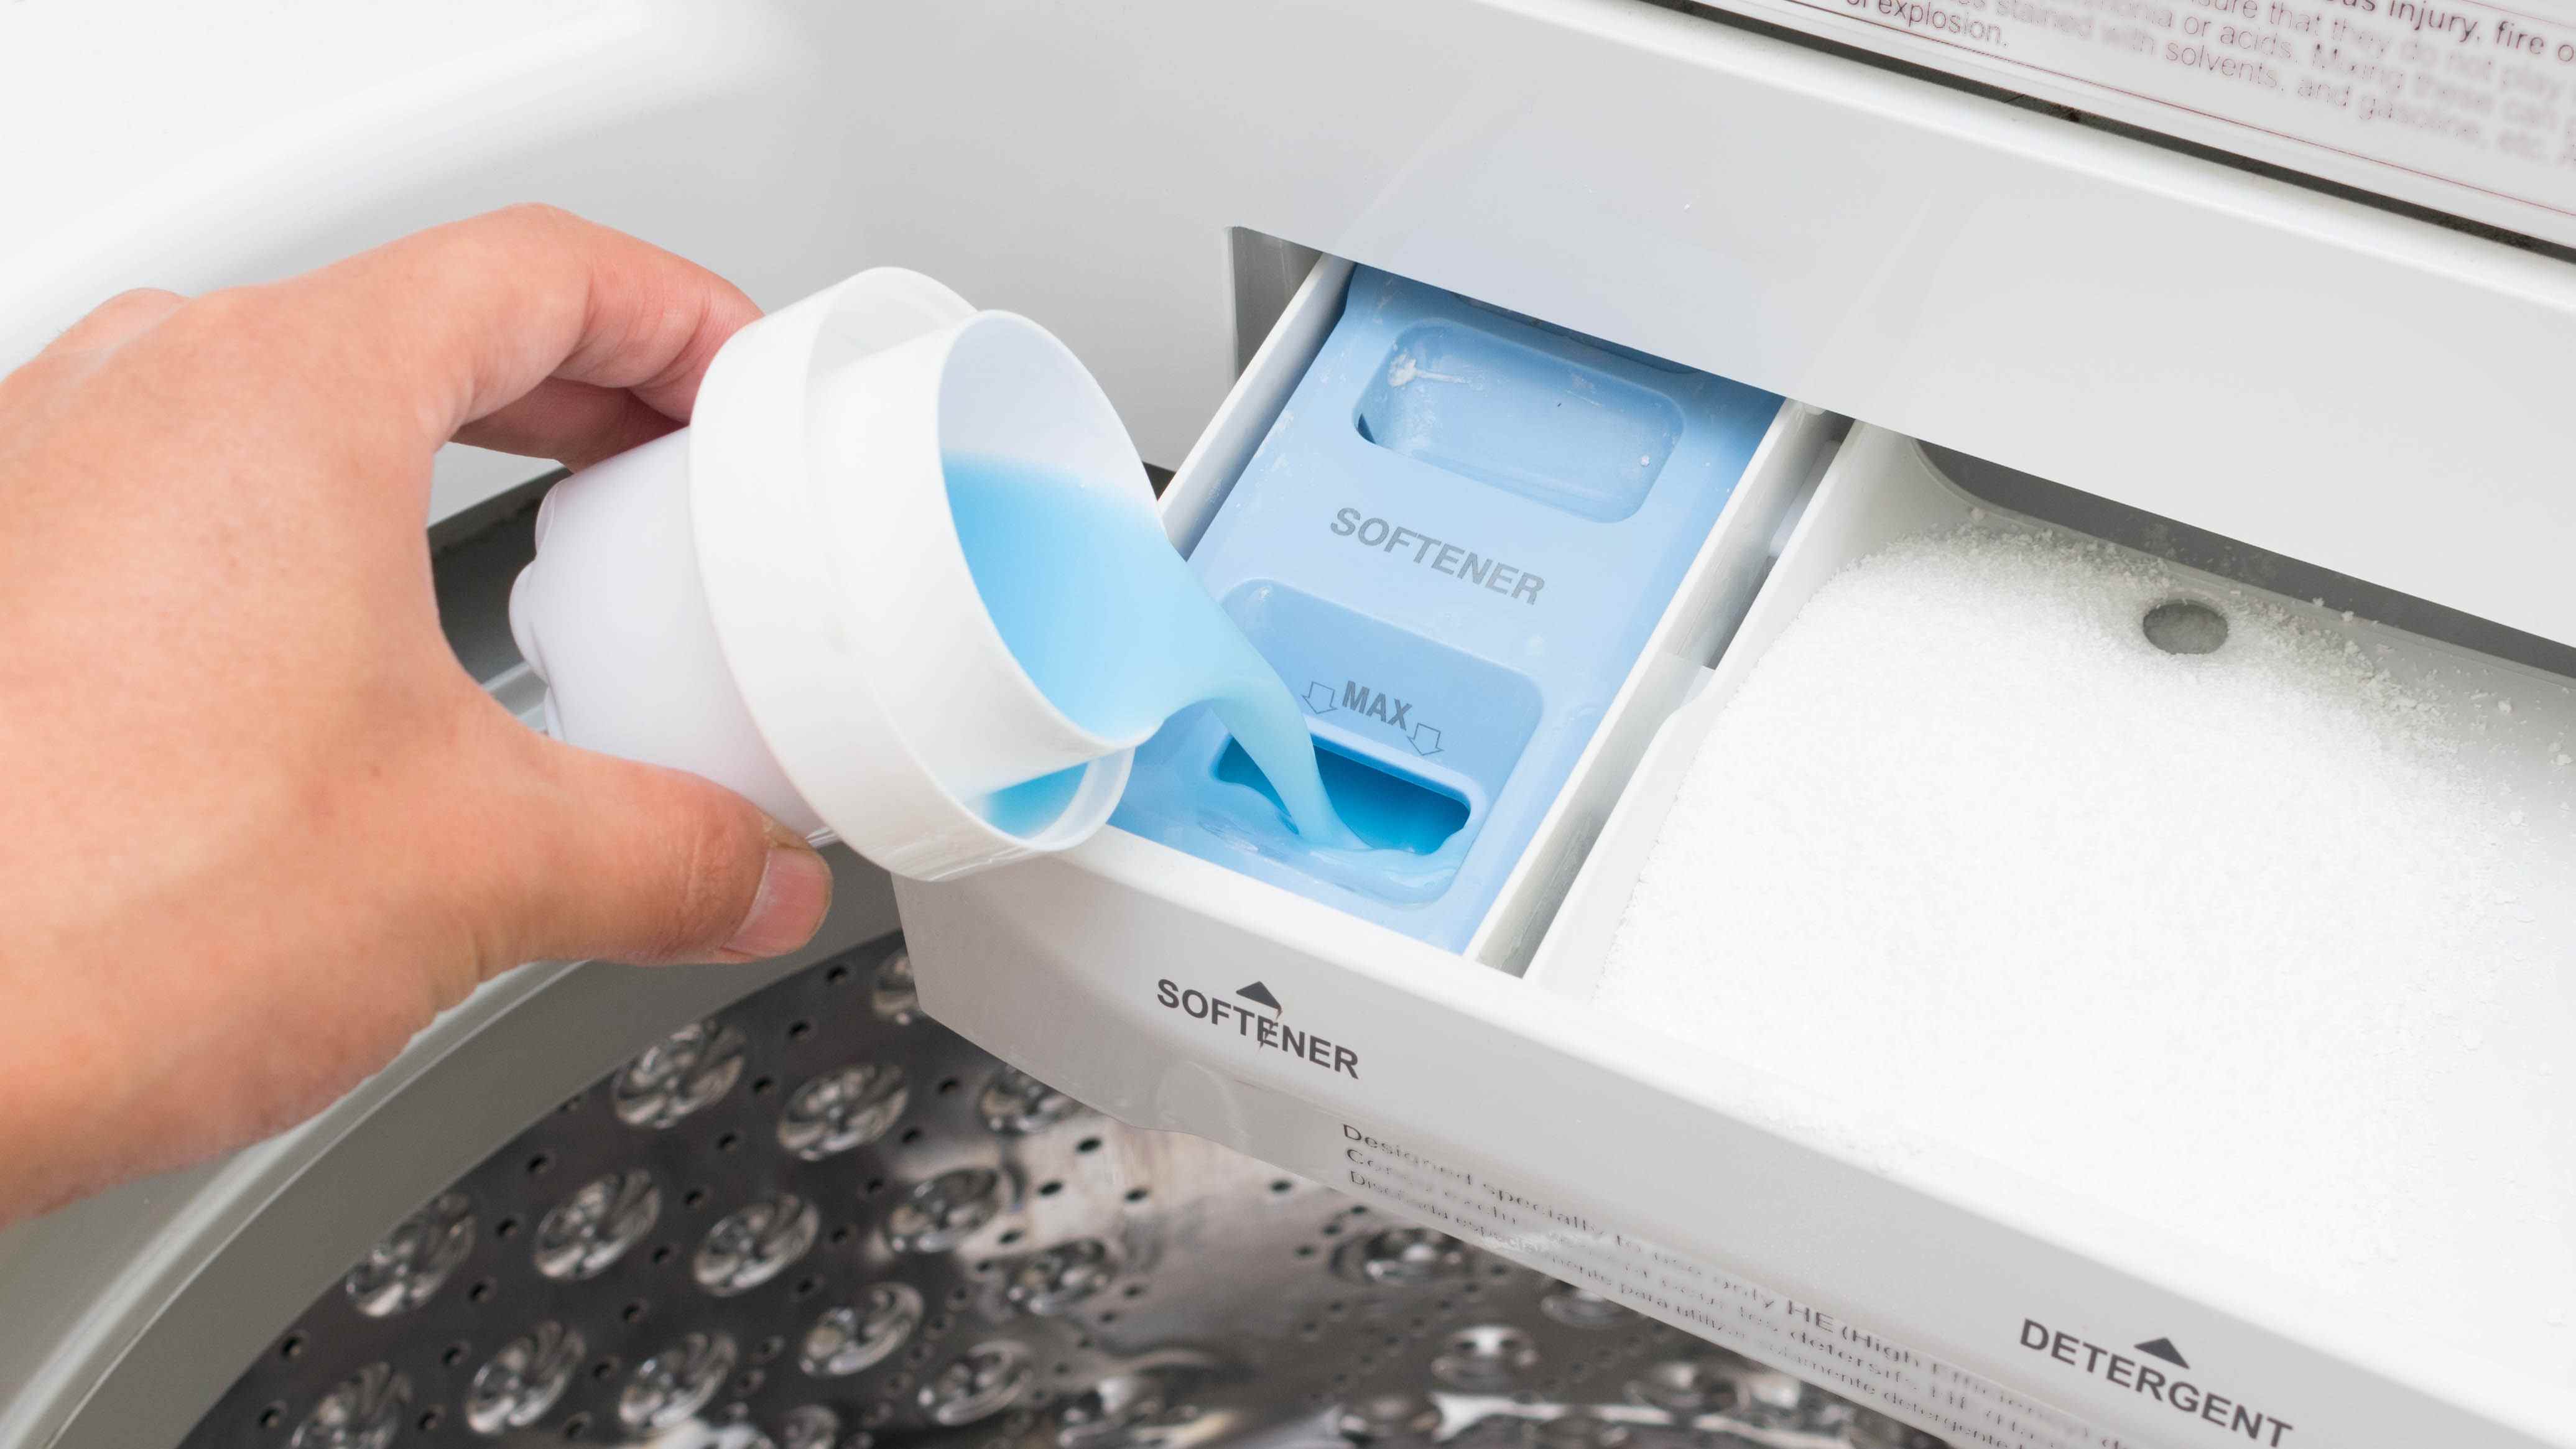 L'assouplissant est ajouté à un tiroir à lessive dans une machine à laver